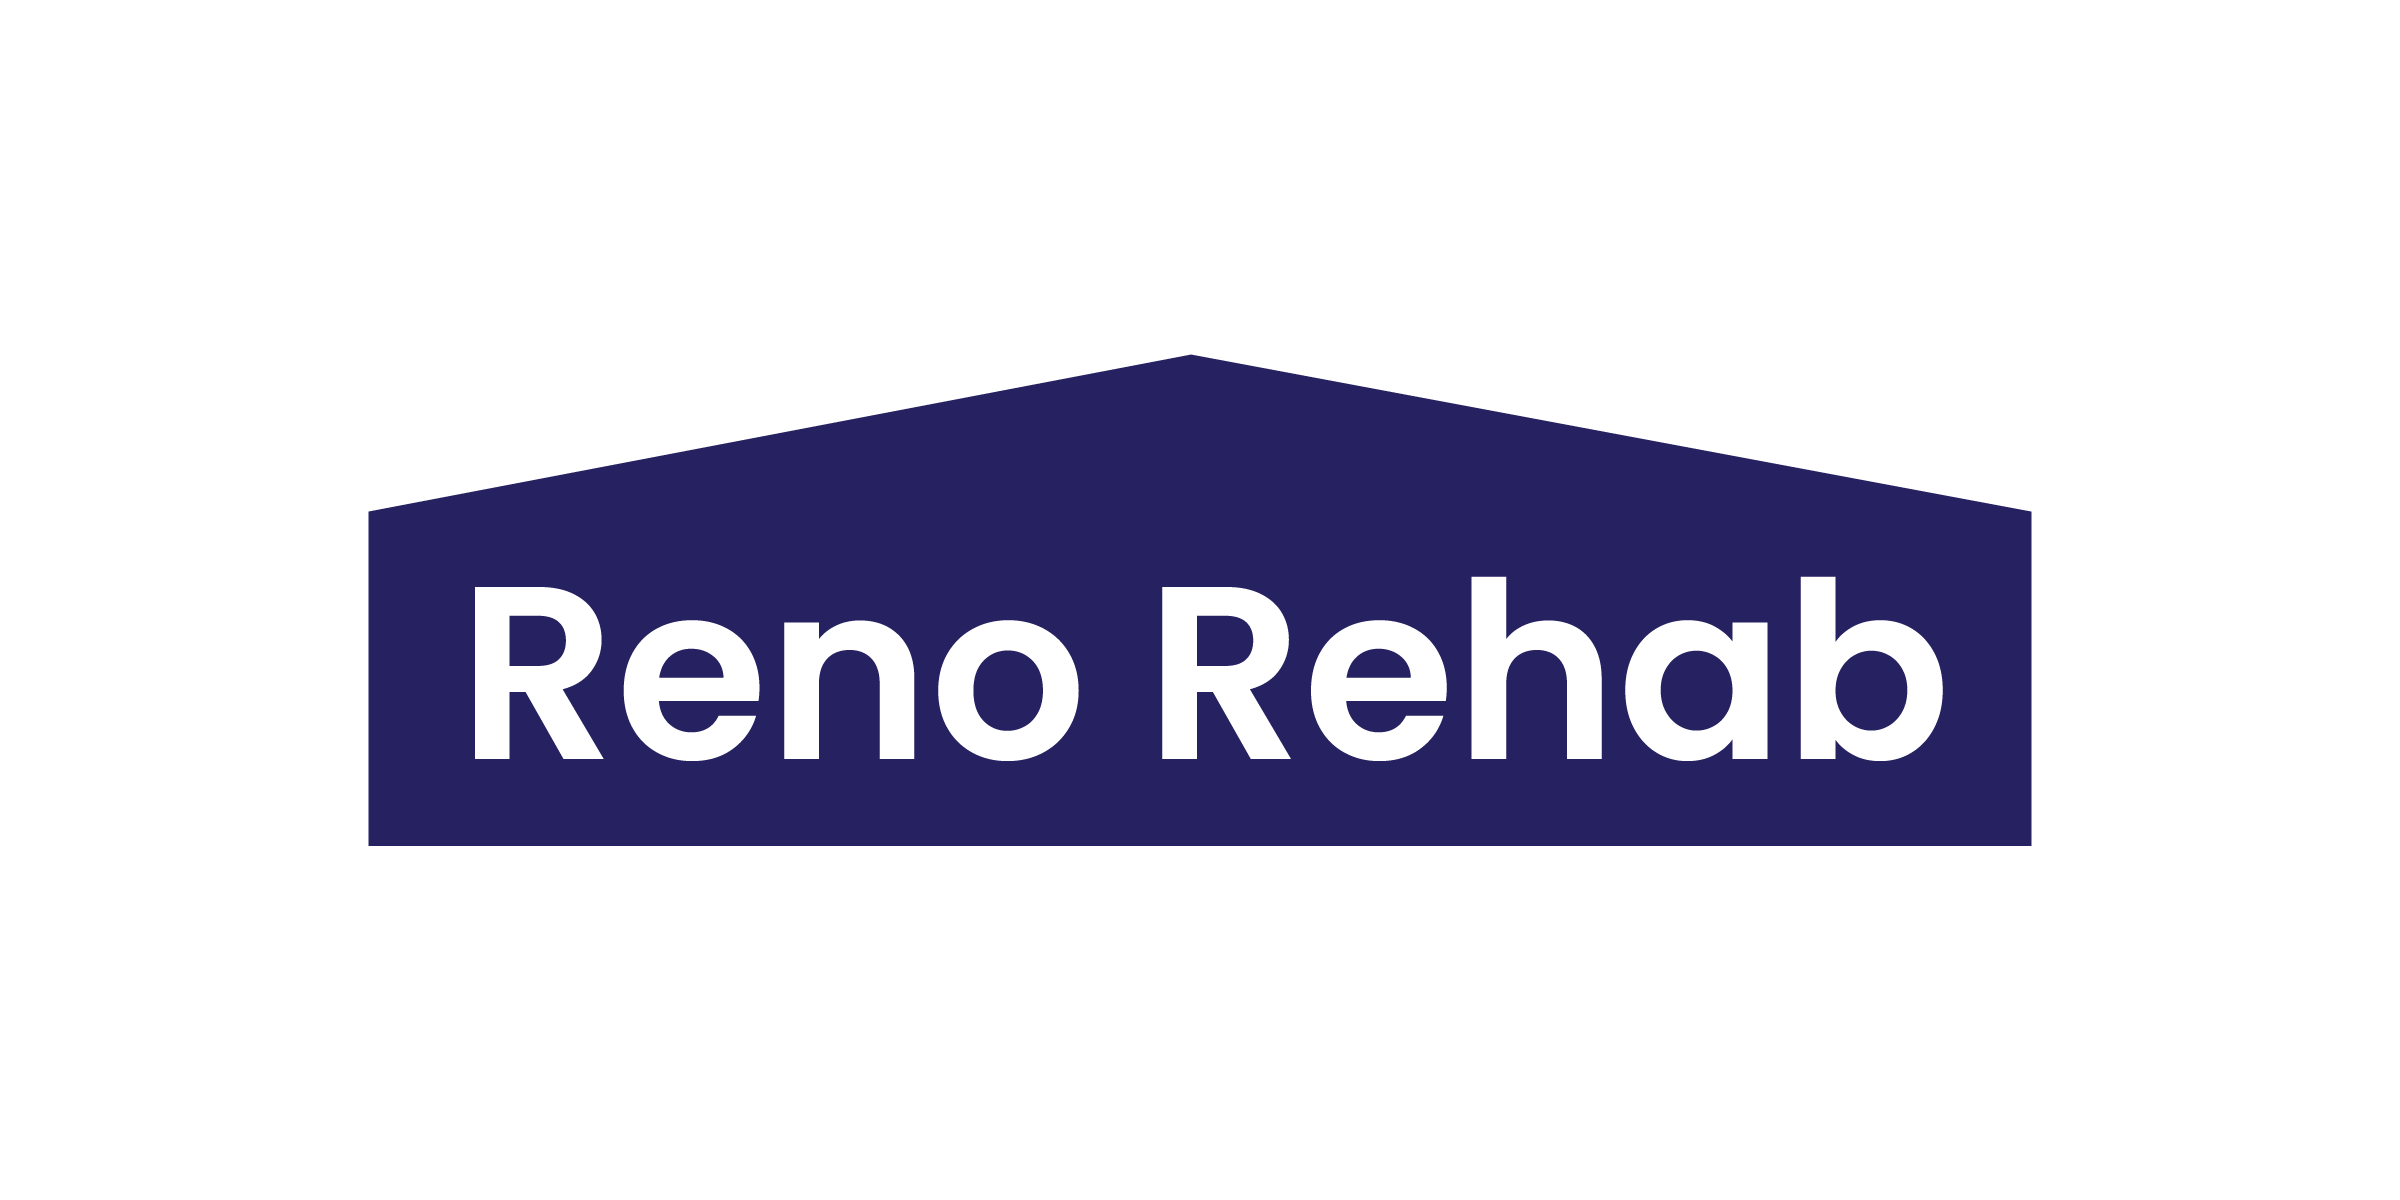 Reno Rehab